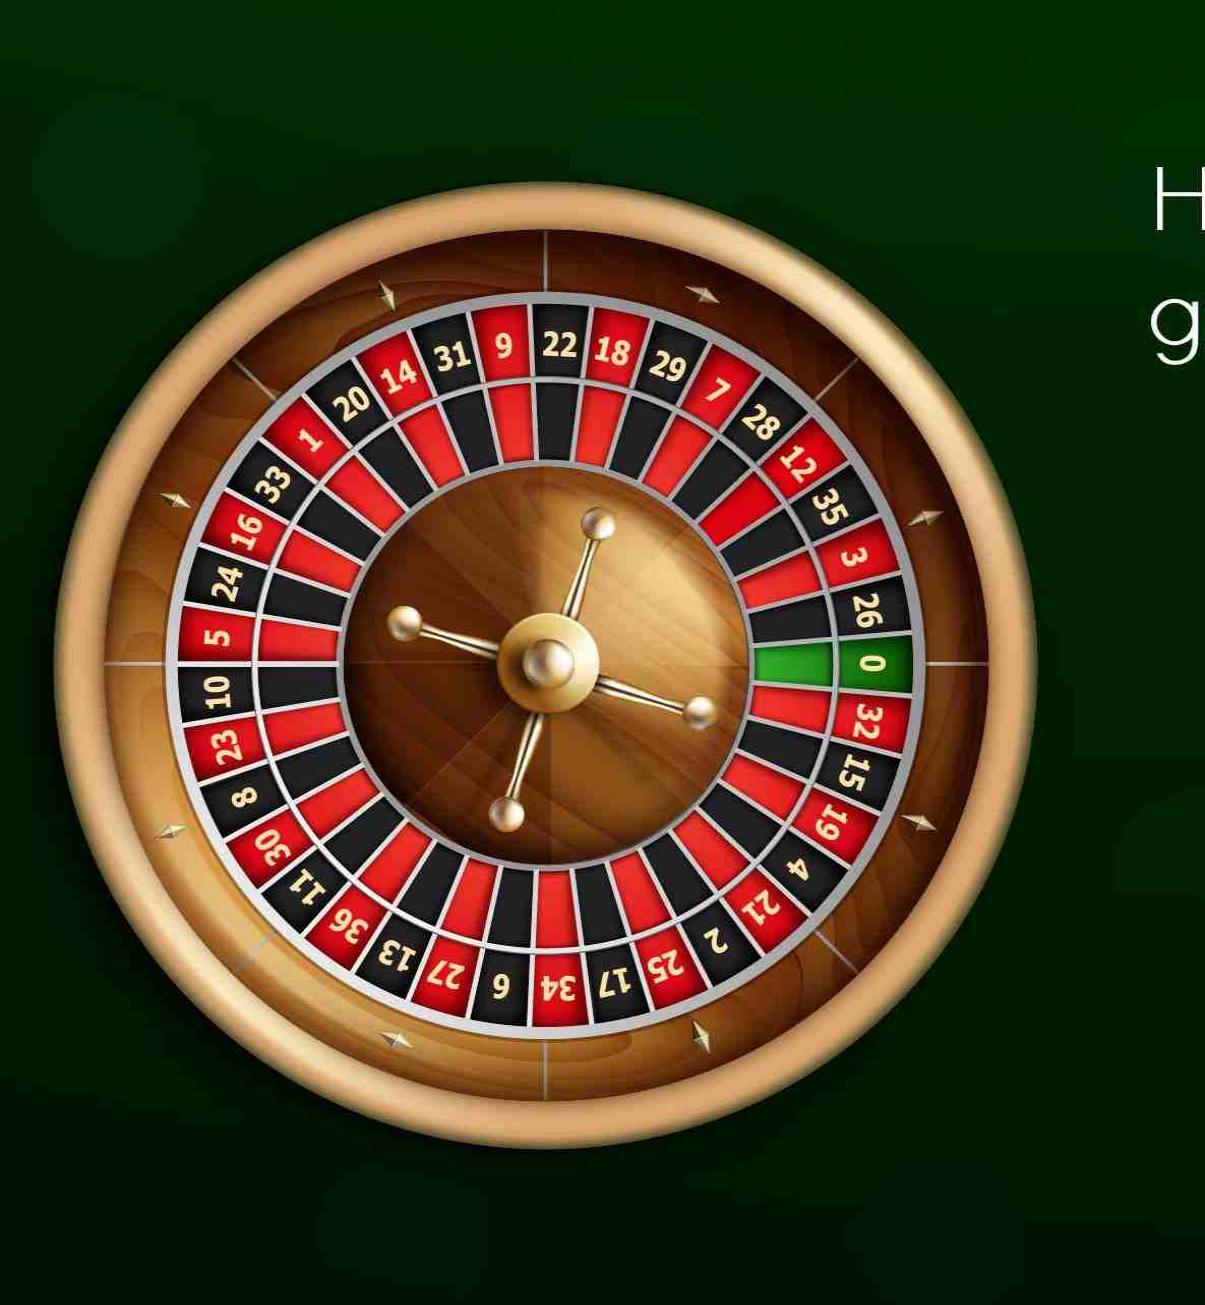 Bonus Types In Online Casino